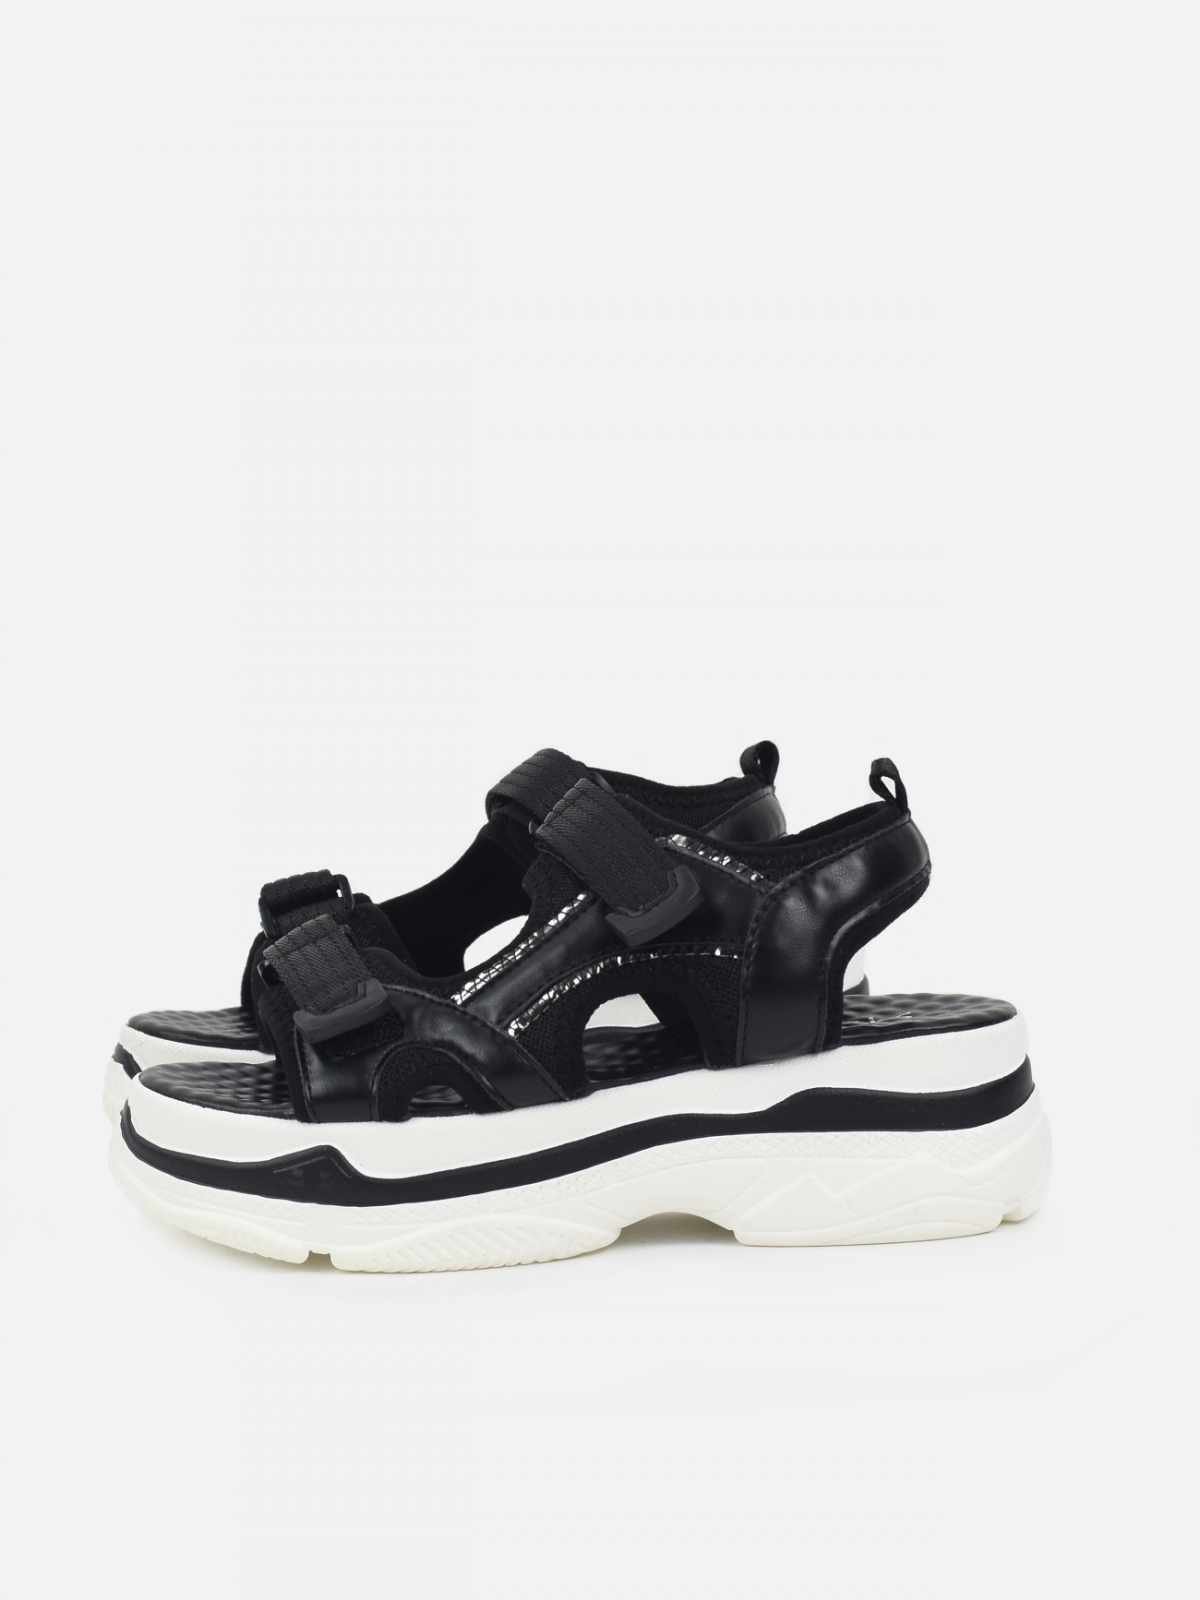 Sport design sandals with medium platform in black & white